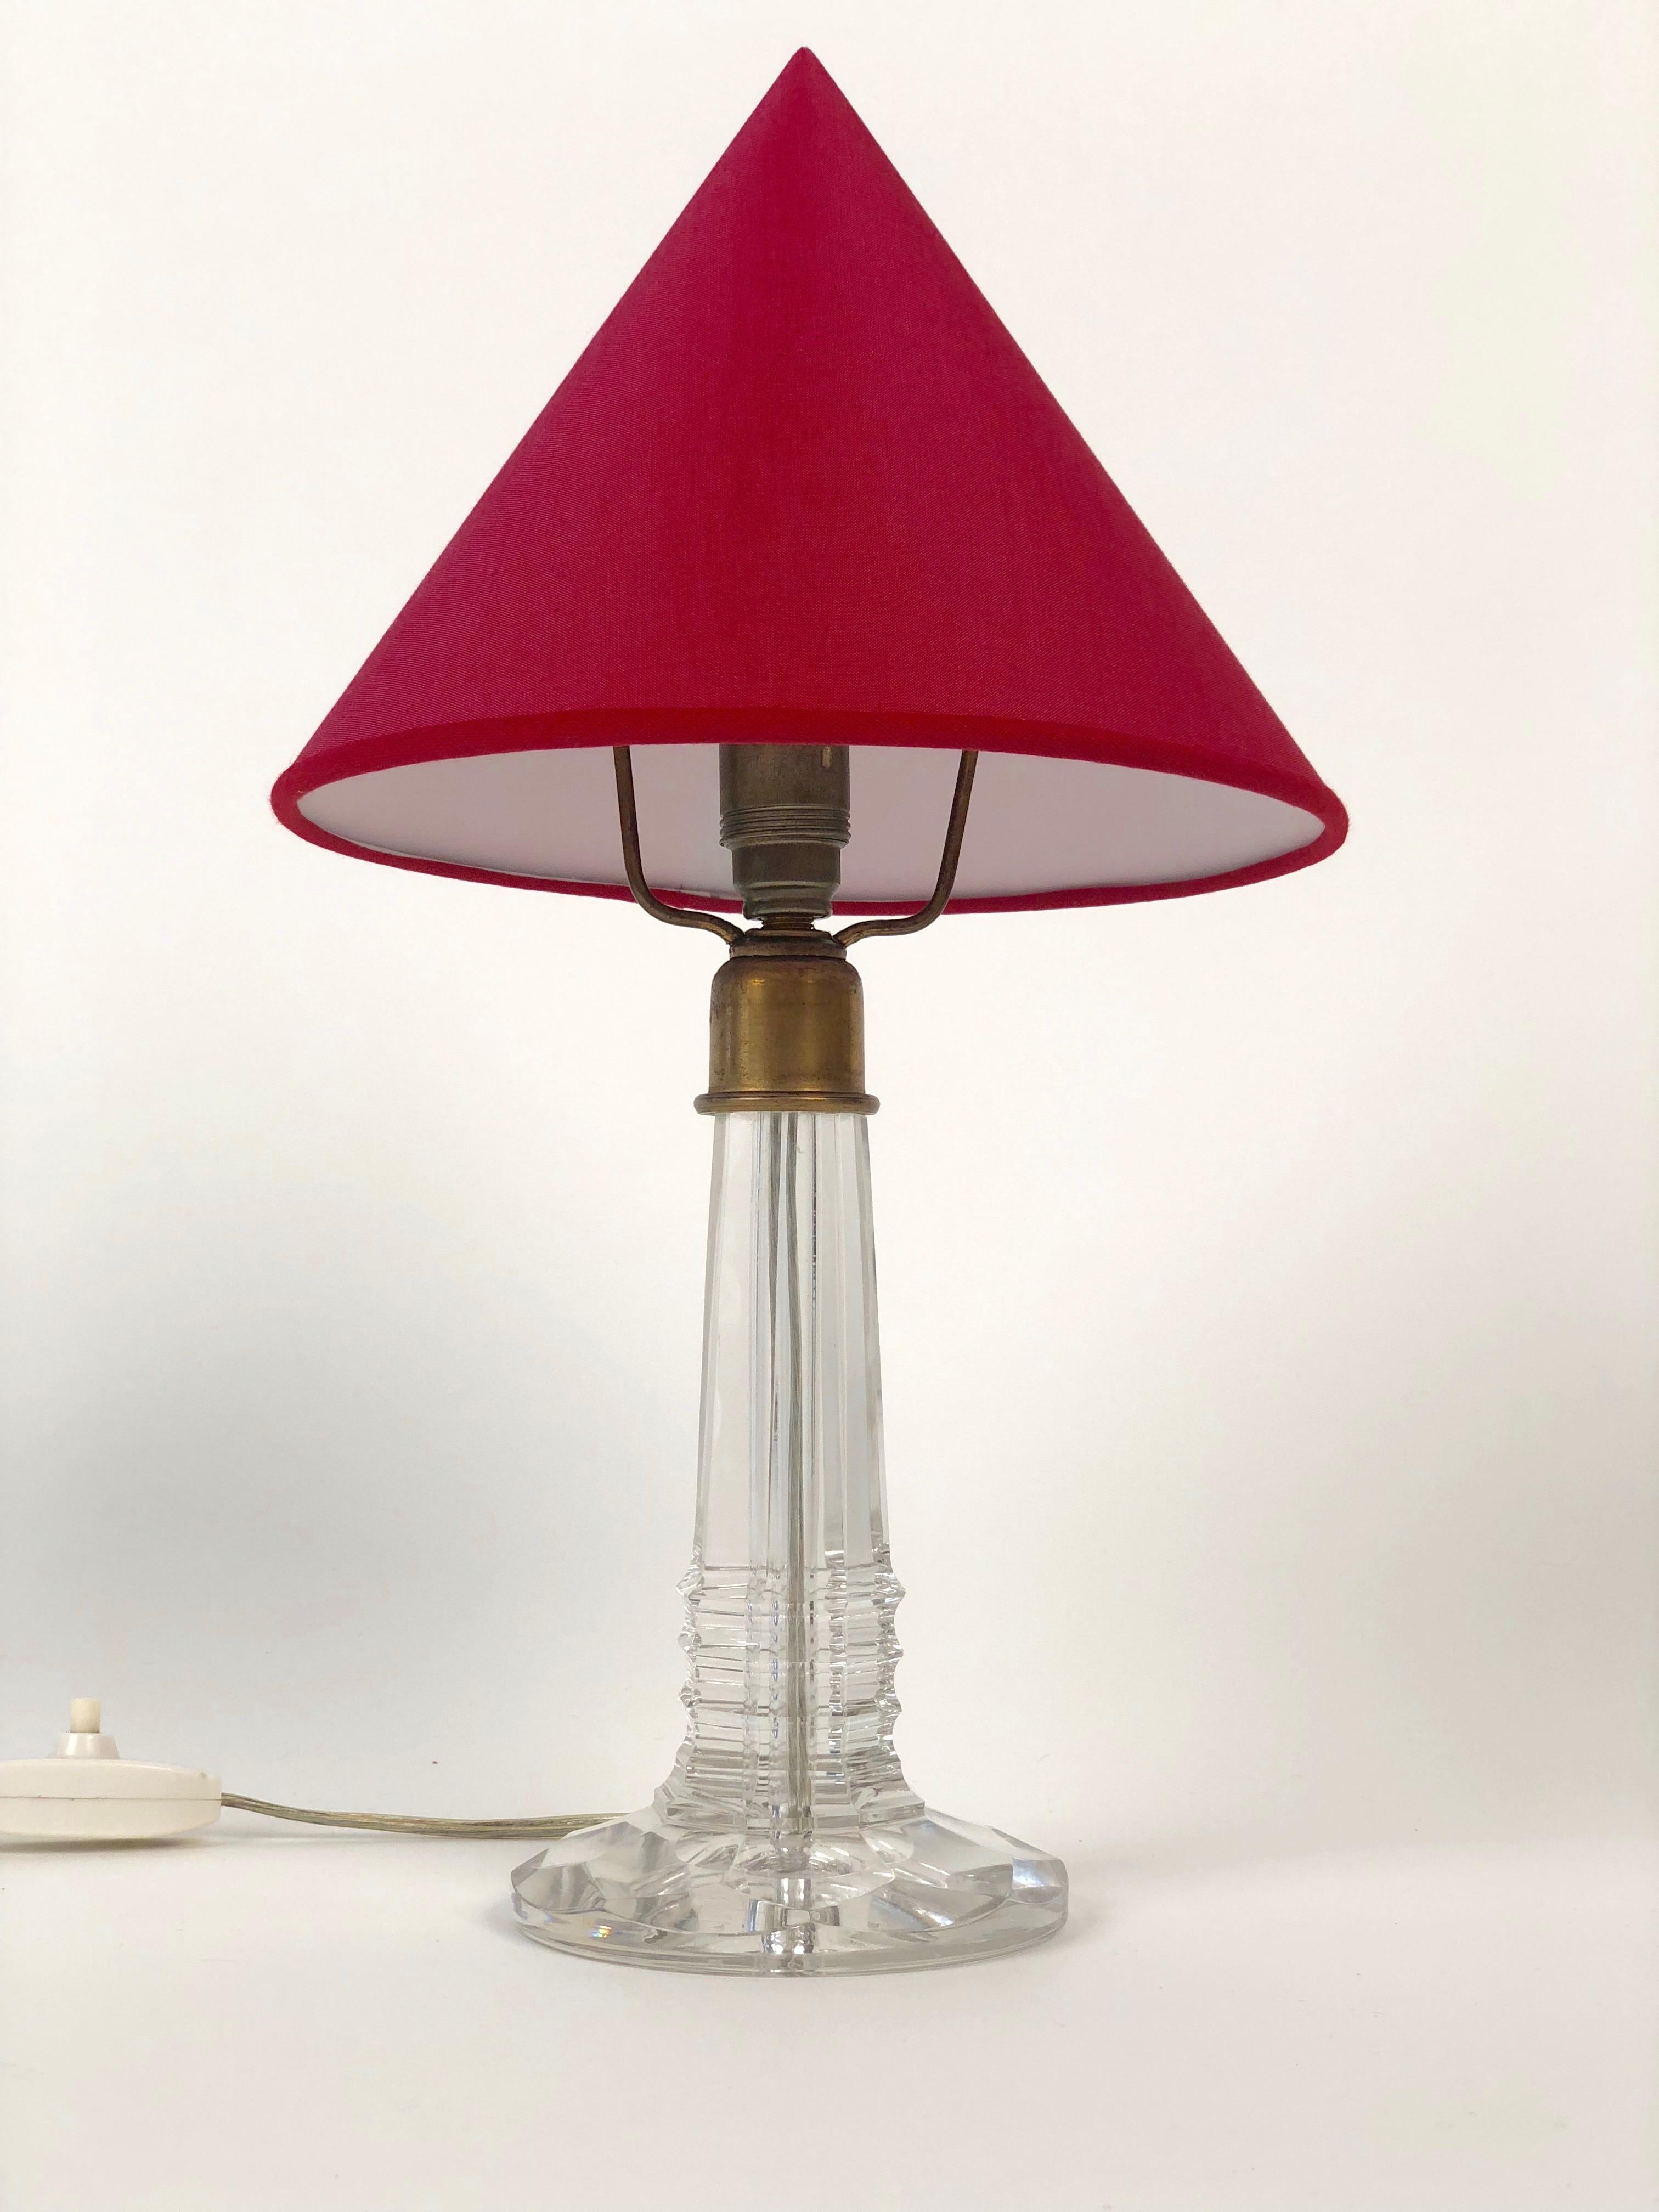 Charmante petite lampe de table avec une base formée par des éléments de montage en verre taillé et en laiton.
Une ombre en forme de cône en soie rouge, basée sur la forme originale.